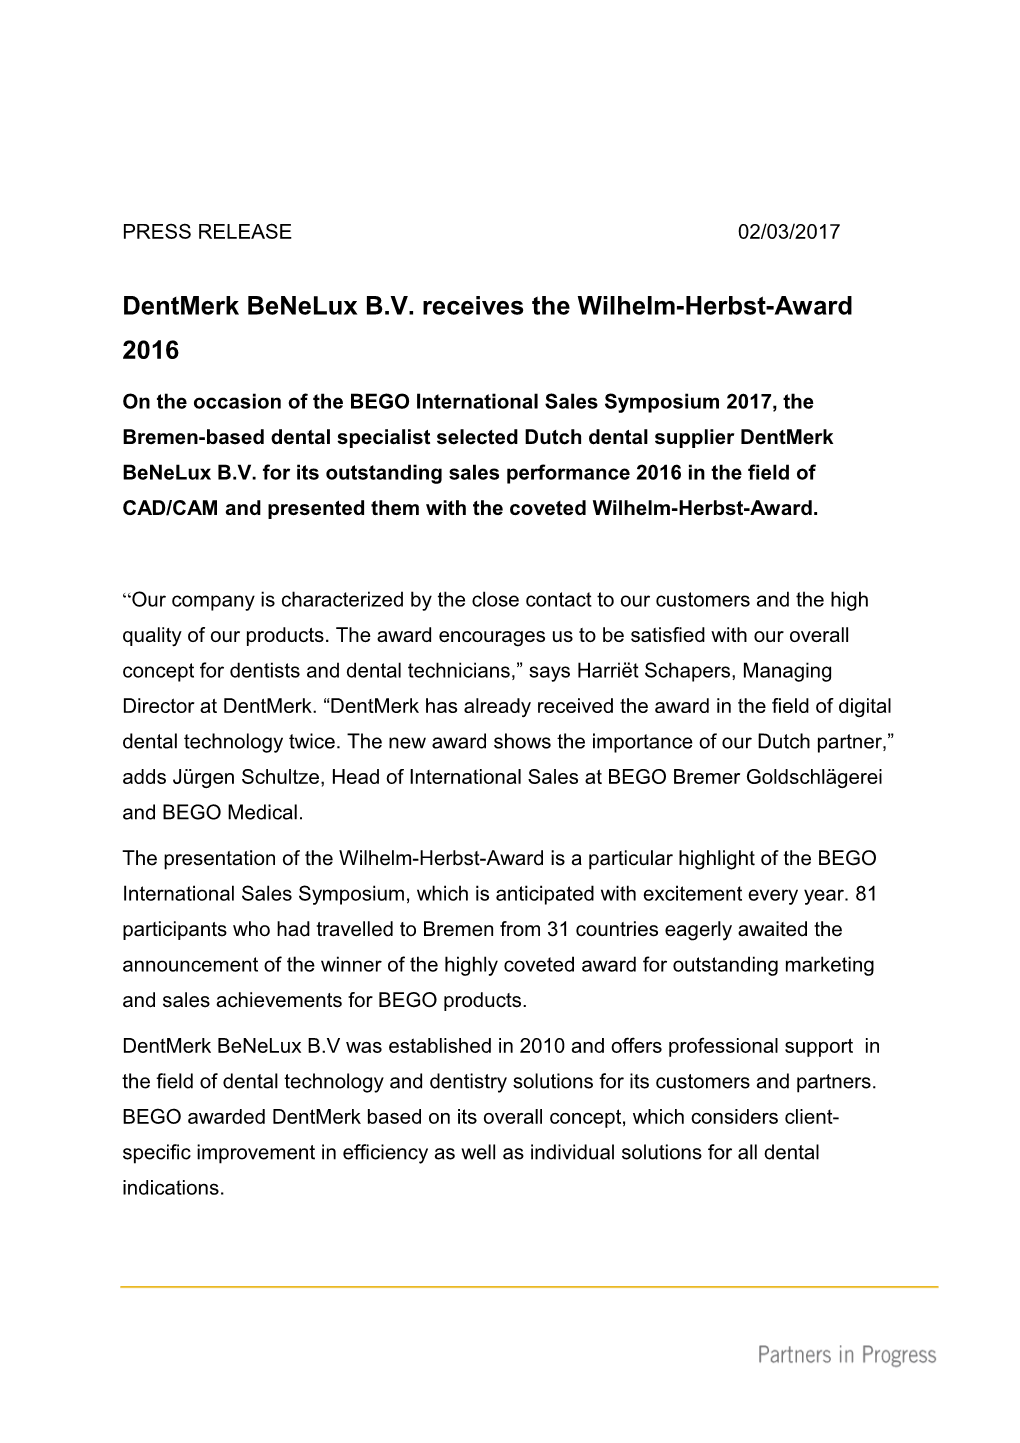 Dentmerk Benelux B.V. Receives the Wilhelm-Herbst-Award 2016